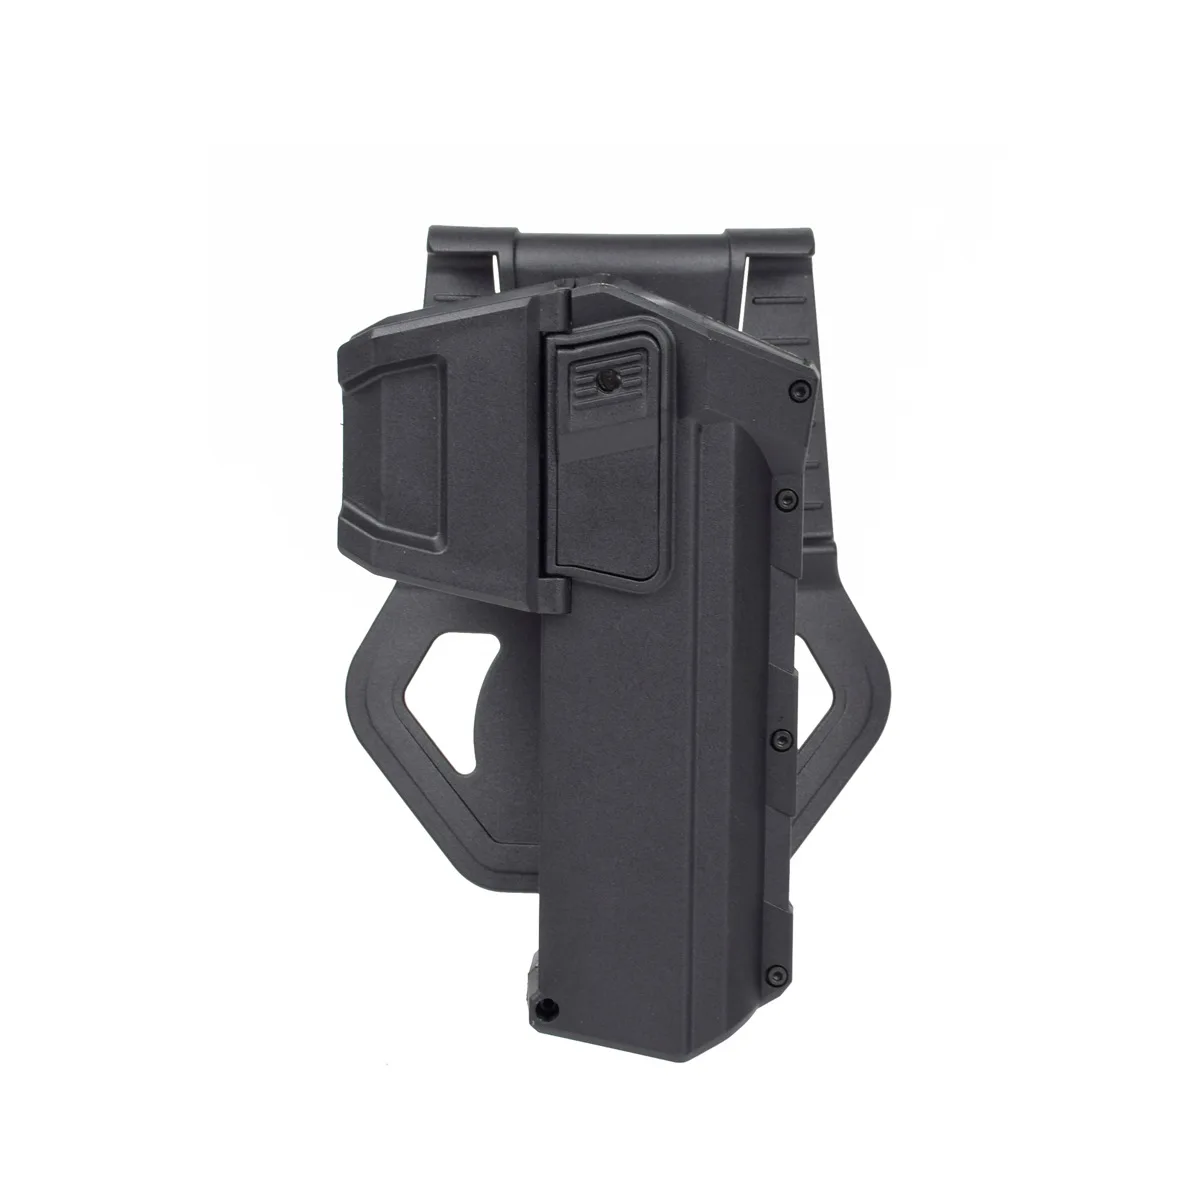 

Тактическая кобура Glock G17/18 для тренировок и охоты